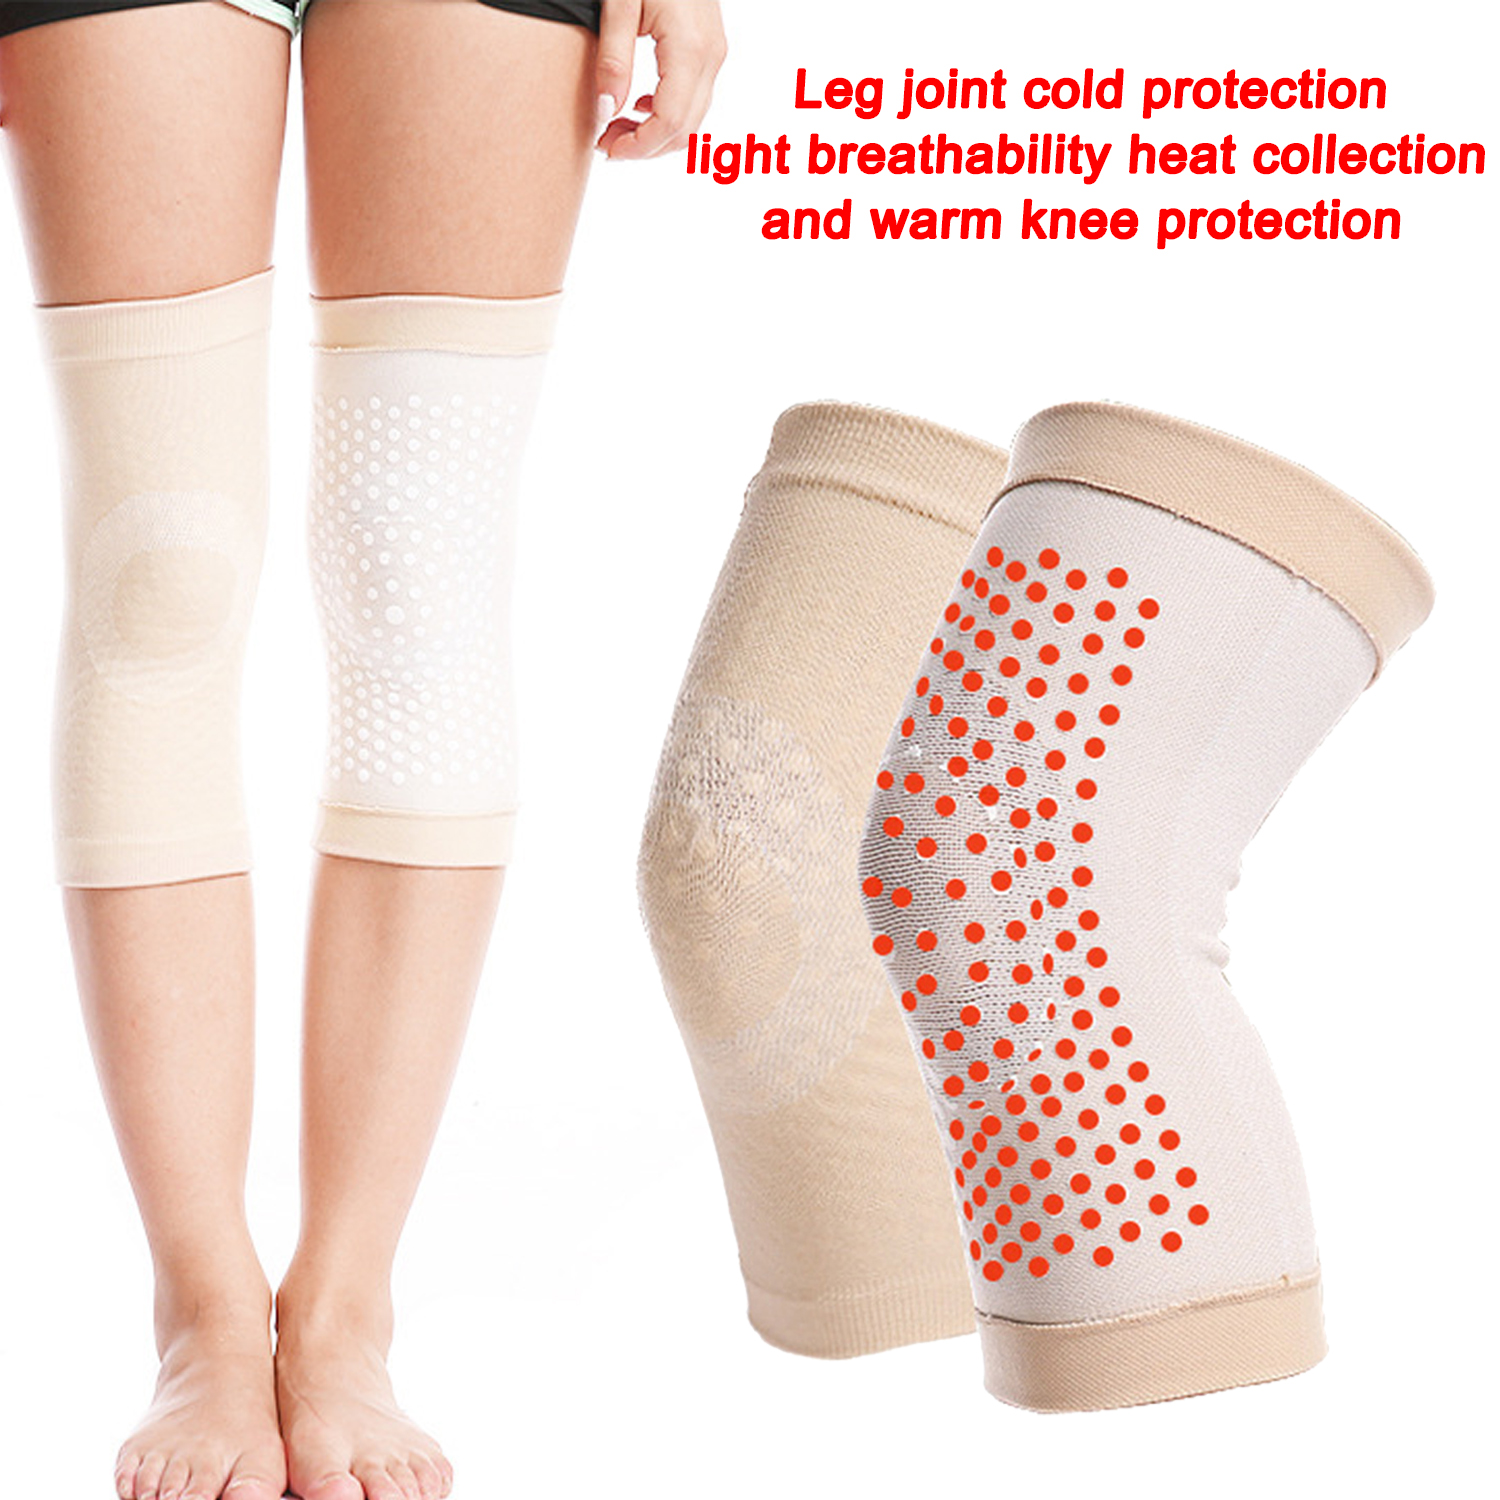 Rodilleras para hombres y mujeres, hombres y mujeres mayores, articulaciones de piernas frías, a prueba de frío, ligeras, transpirables, rodilleras que reúnen calor, rodilleras cálidas